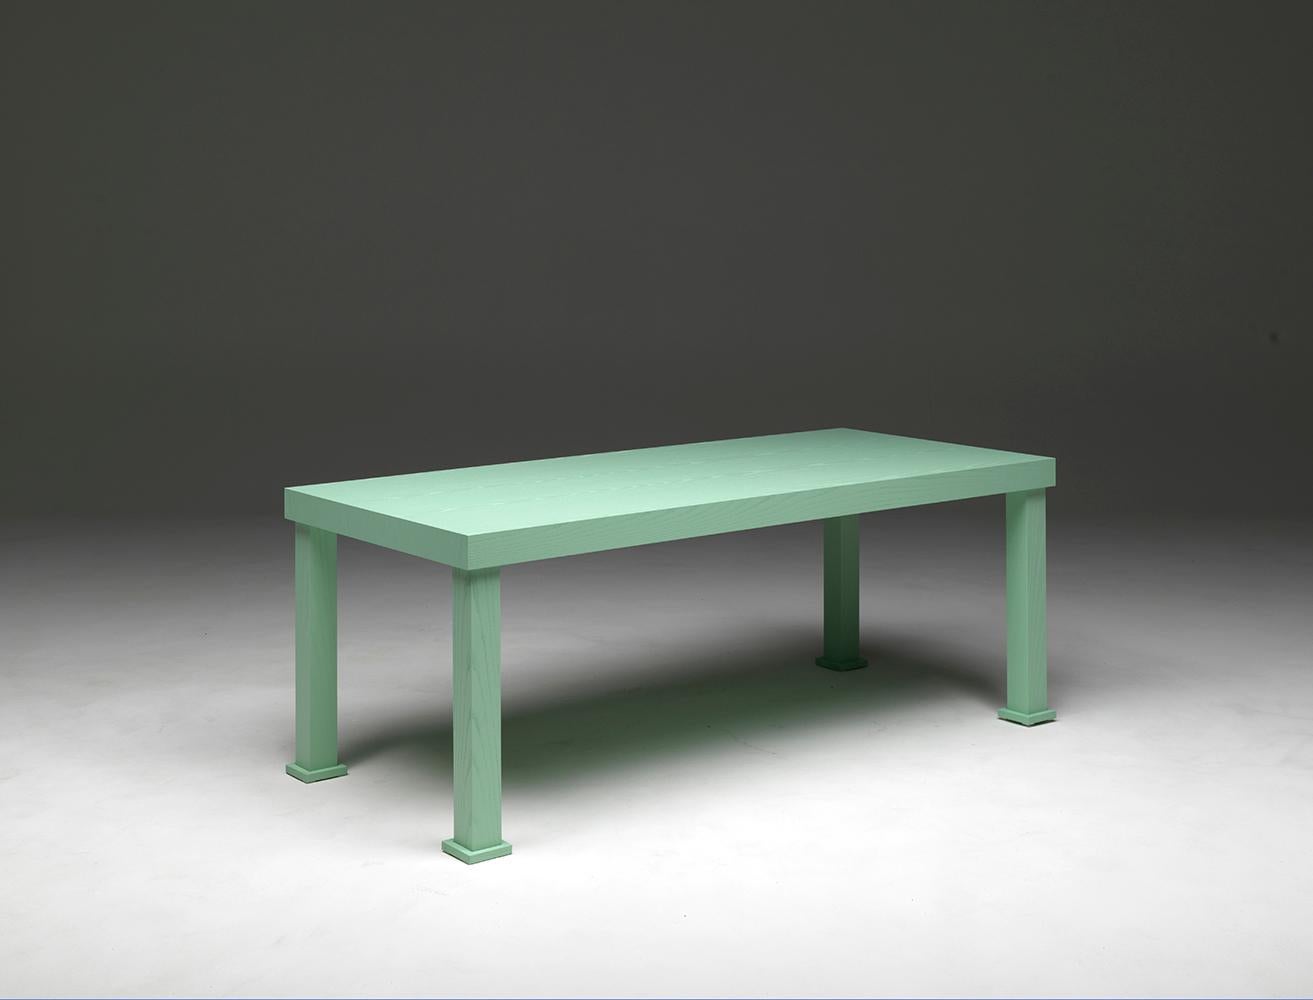 Universal Living, rechteckiger Esstisch aus offenporig lackiertem Eschenholz, Farbe marinegrün, mit Beinen aus quadratischem Profil. Entworfen von Aldo Cibic.
Ein Tisch mit starker, aber nicht übertriebener Persönlichkeit, mit warmer und angenehmer